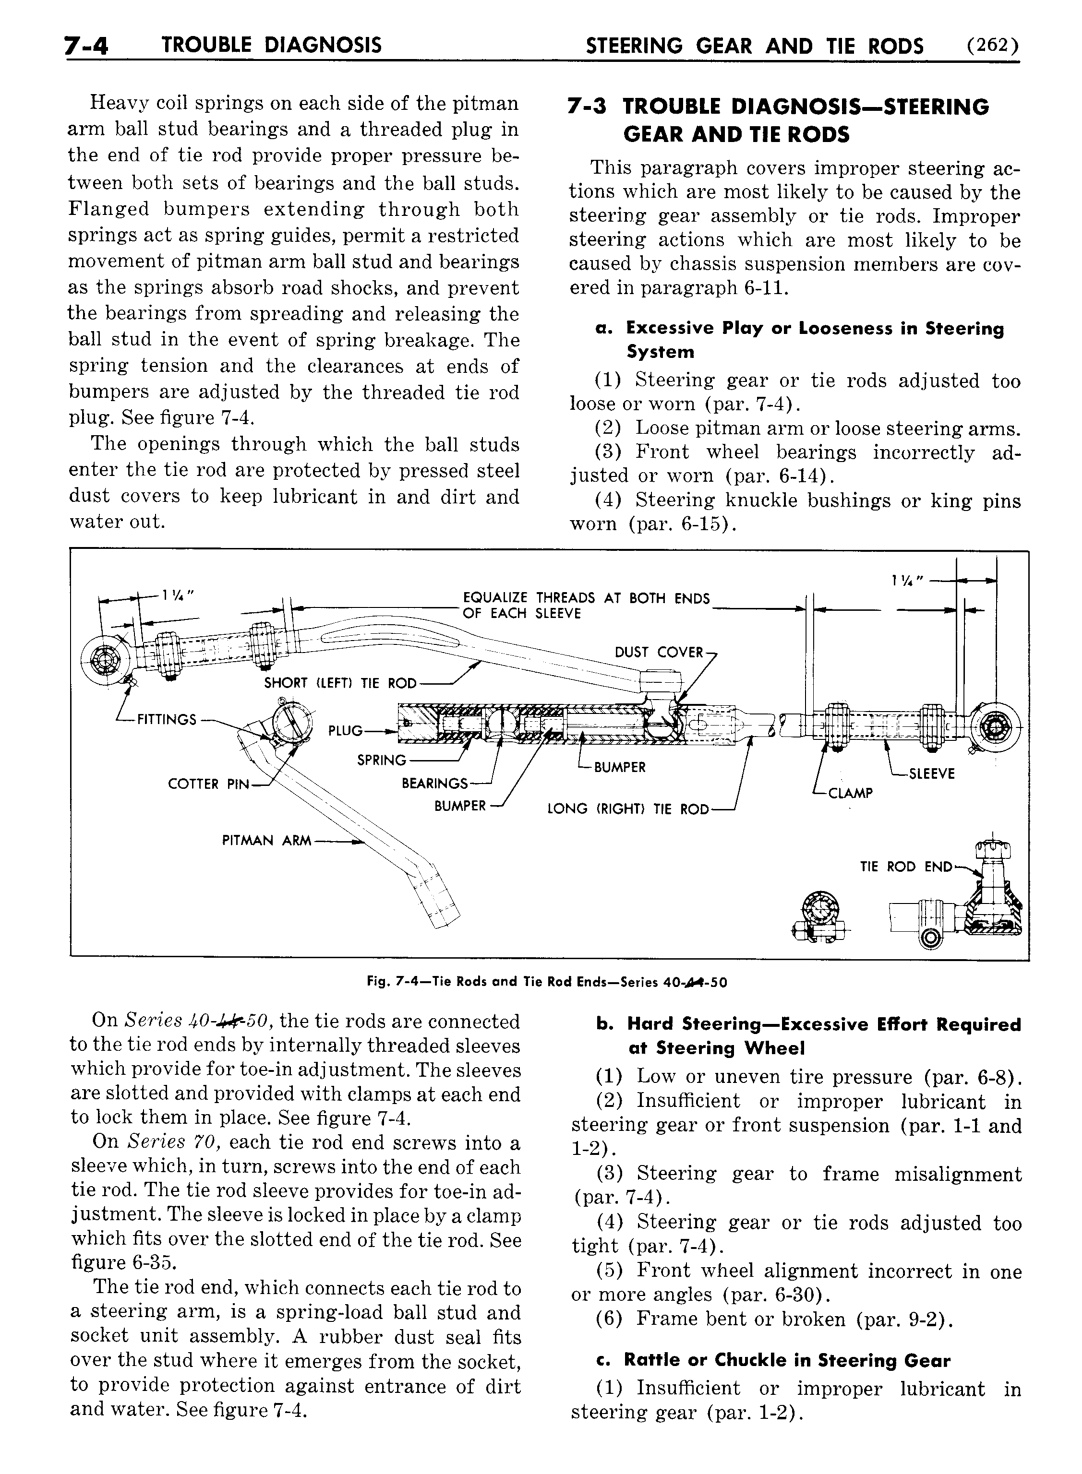 n_08 1951 Buick Shop Manual - Steering-004-004.jpg